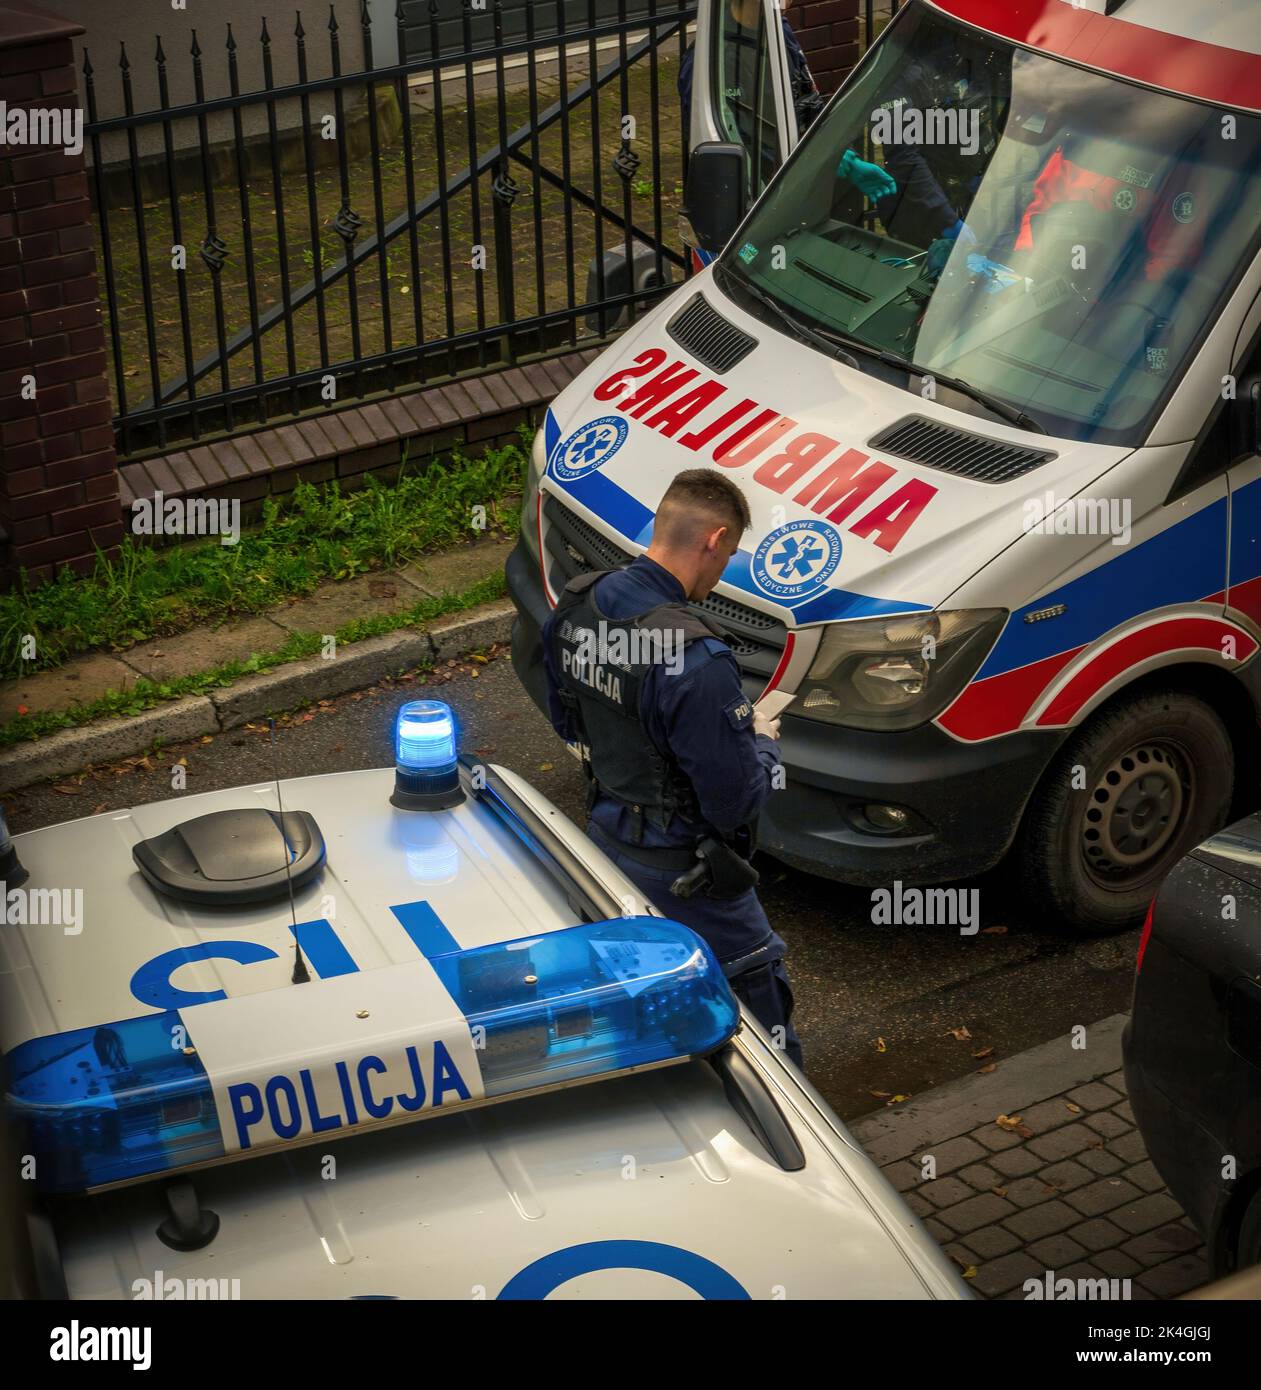 Una polizia europea in uniforme che utilizza un cellulare in servizio davanti alla macchina della polizia accanto a un'ambulanza. Scena del crimine e concetto di indagine Foto Stock